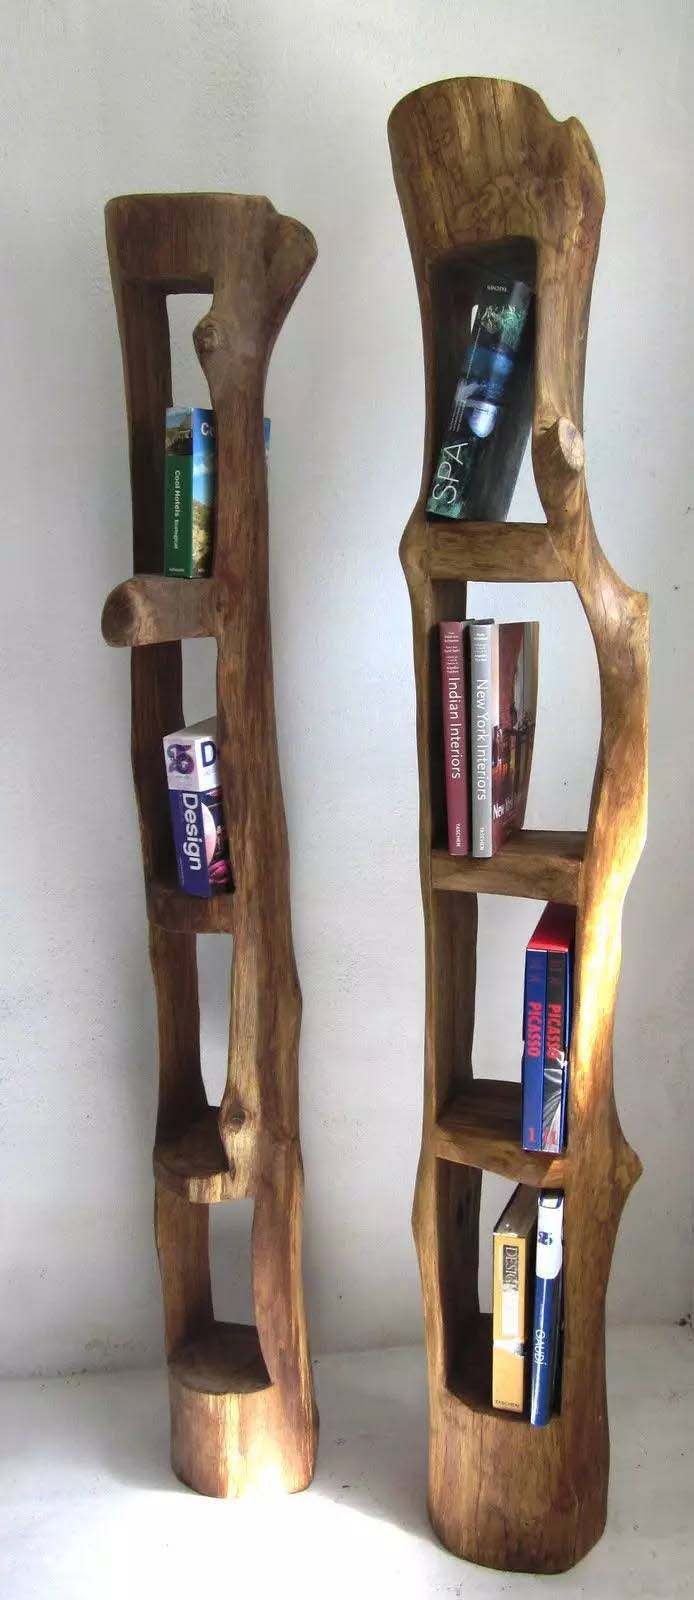 Bookshelves made from tree trunks